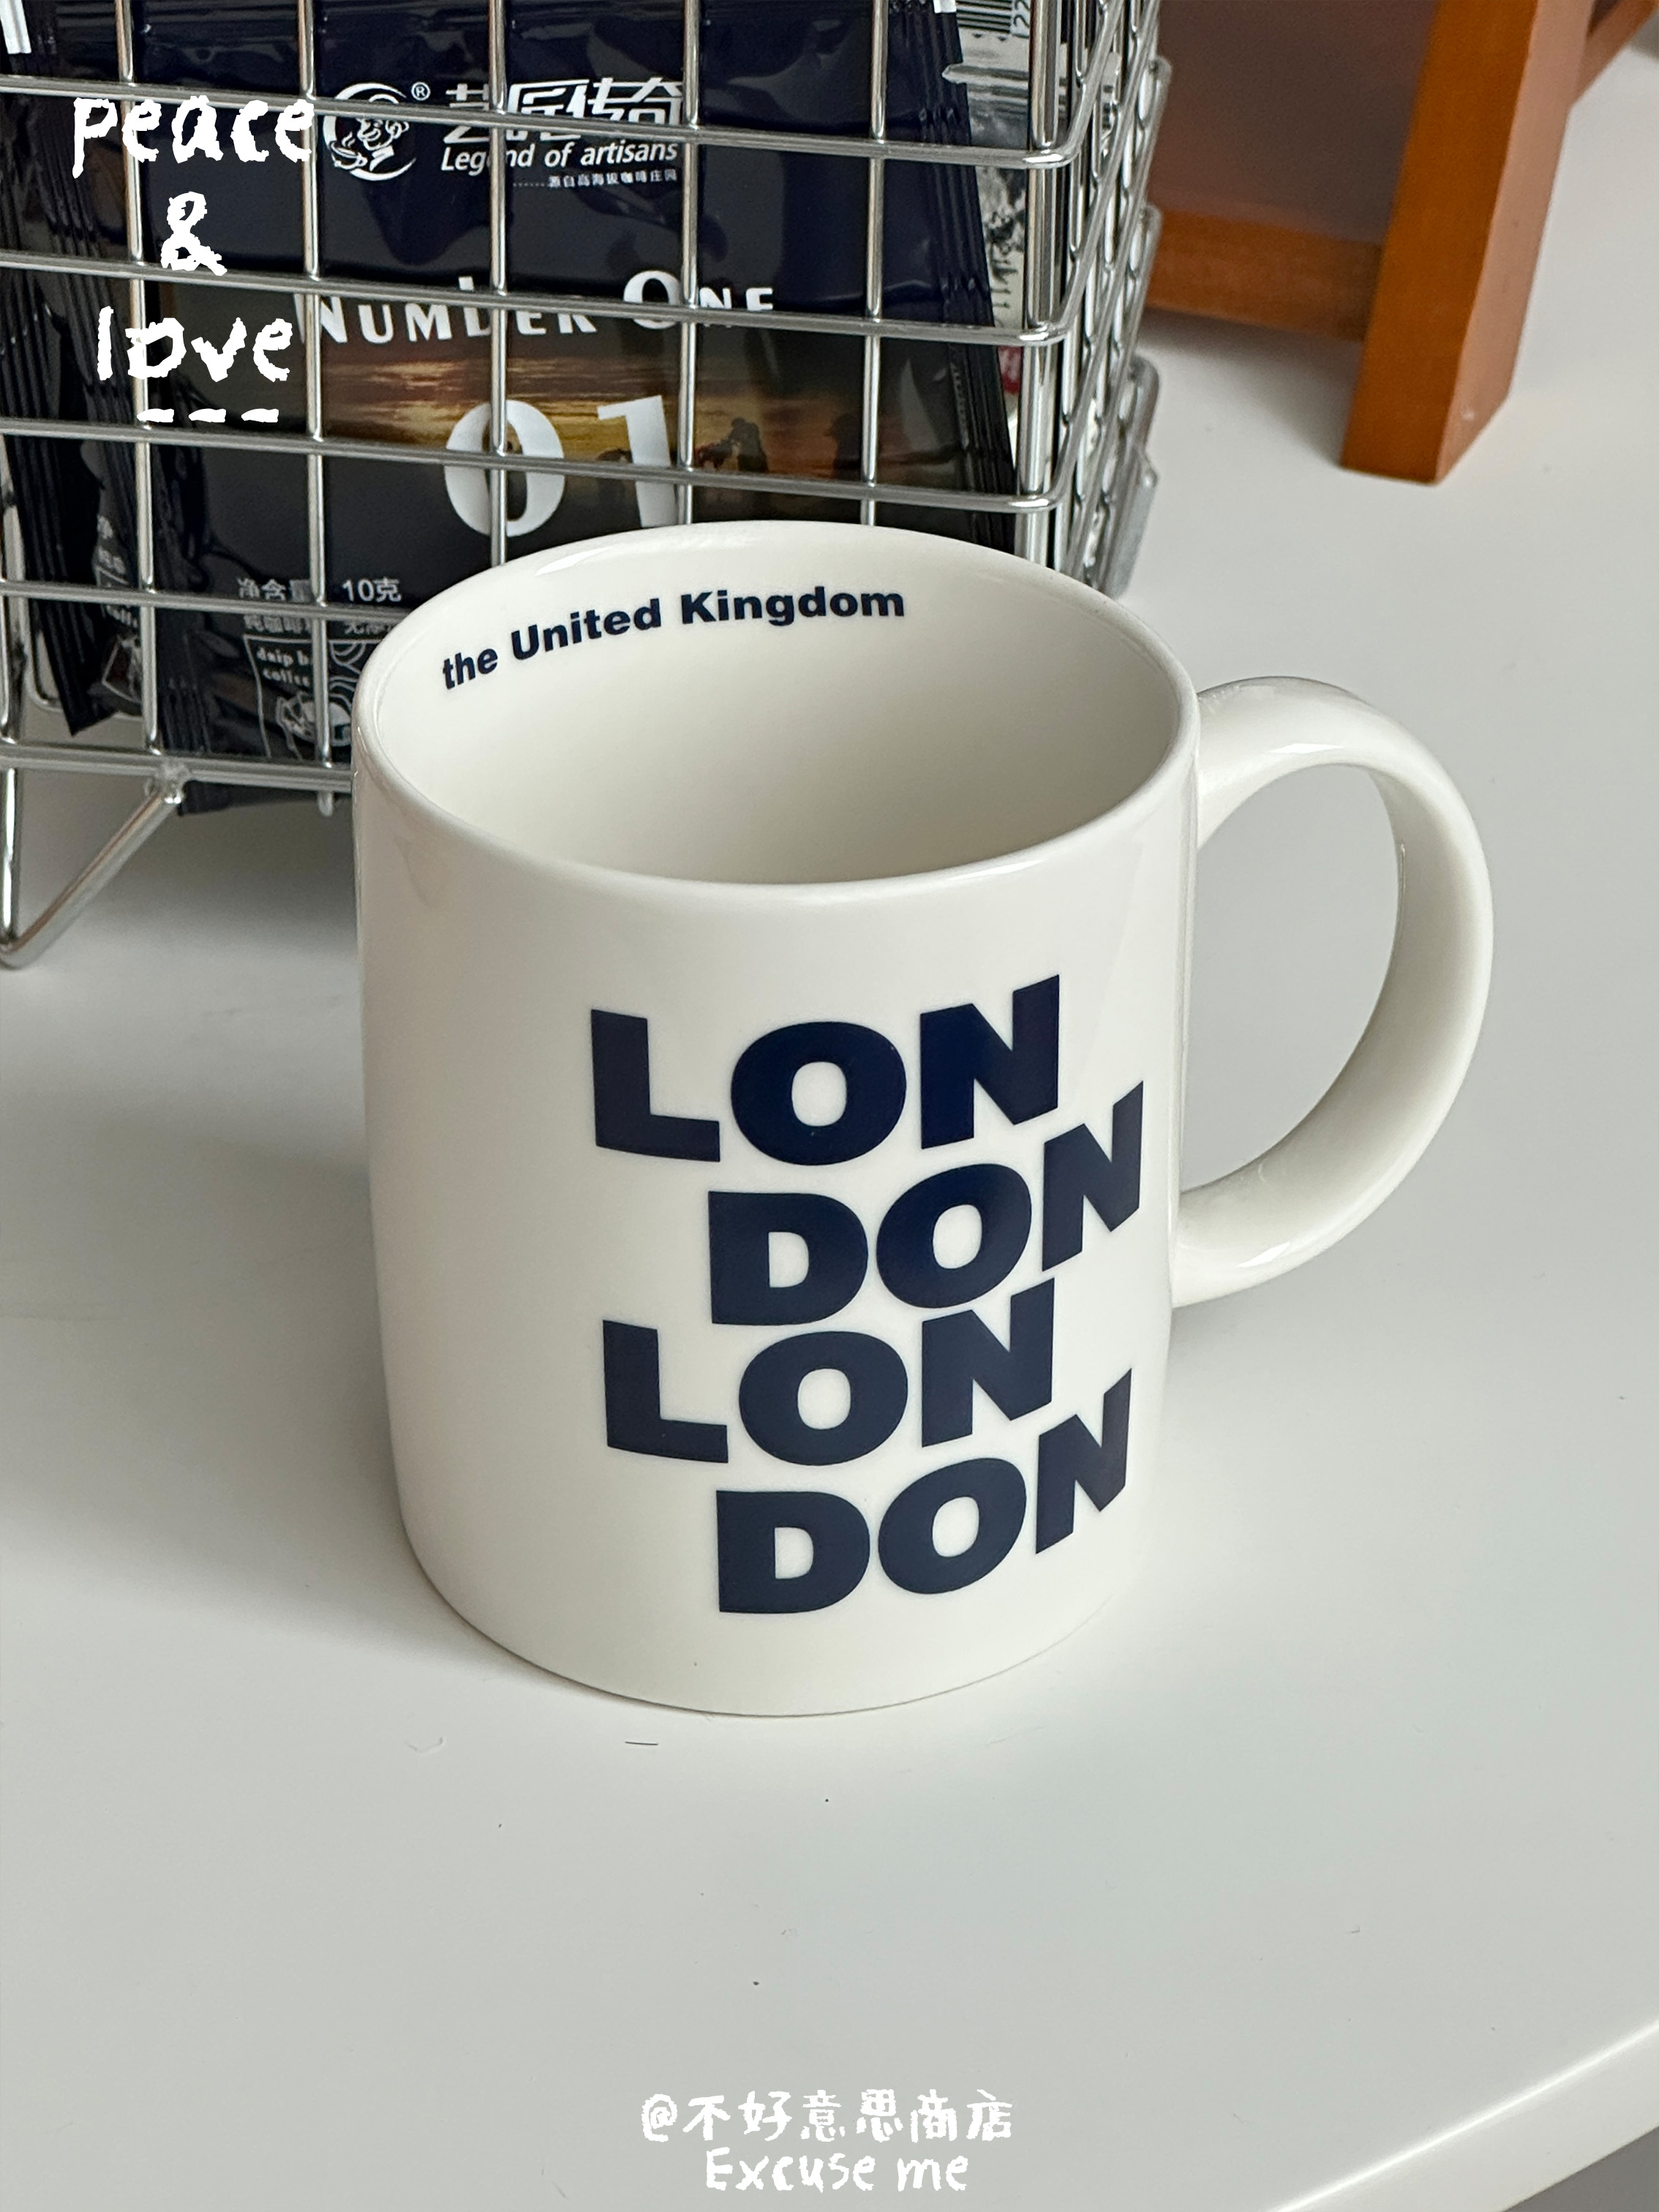 城市地名LONDON伦敦藏蓝色字母英文咖啡杯纪念简约陶瓷骨瓷马克杯